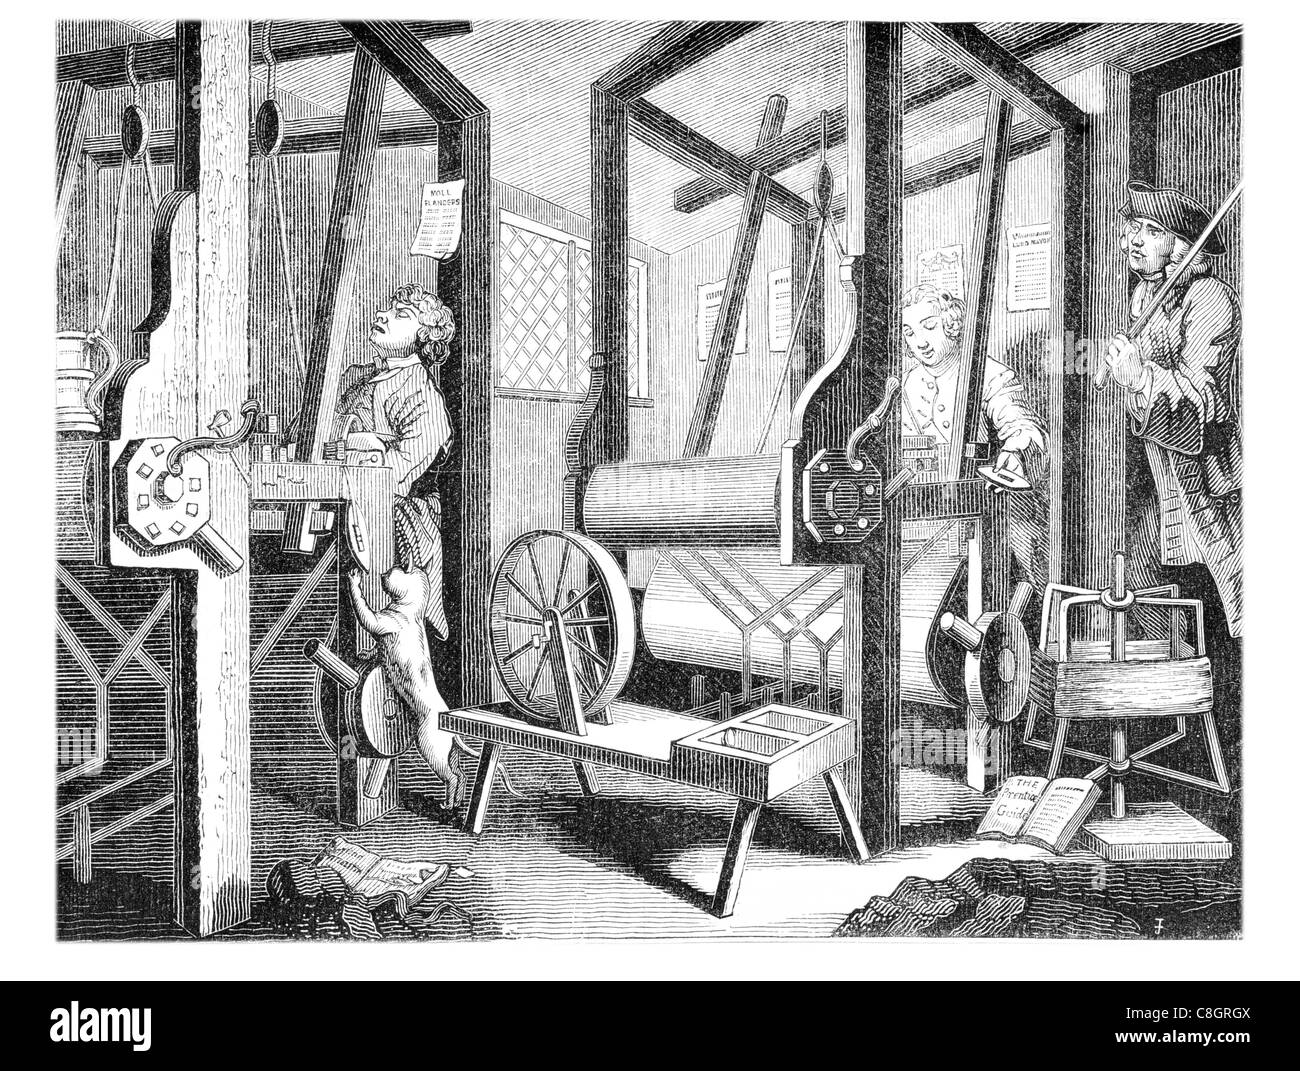 Clothiers tisser loom 18e siècle reed navette heddles de guerre de l'industrie pet dog cottage clothier atelier Banque D'Images